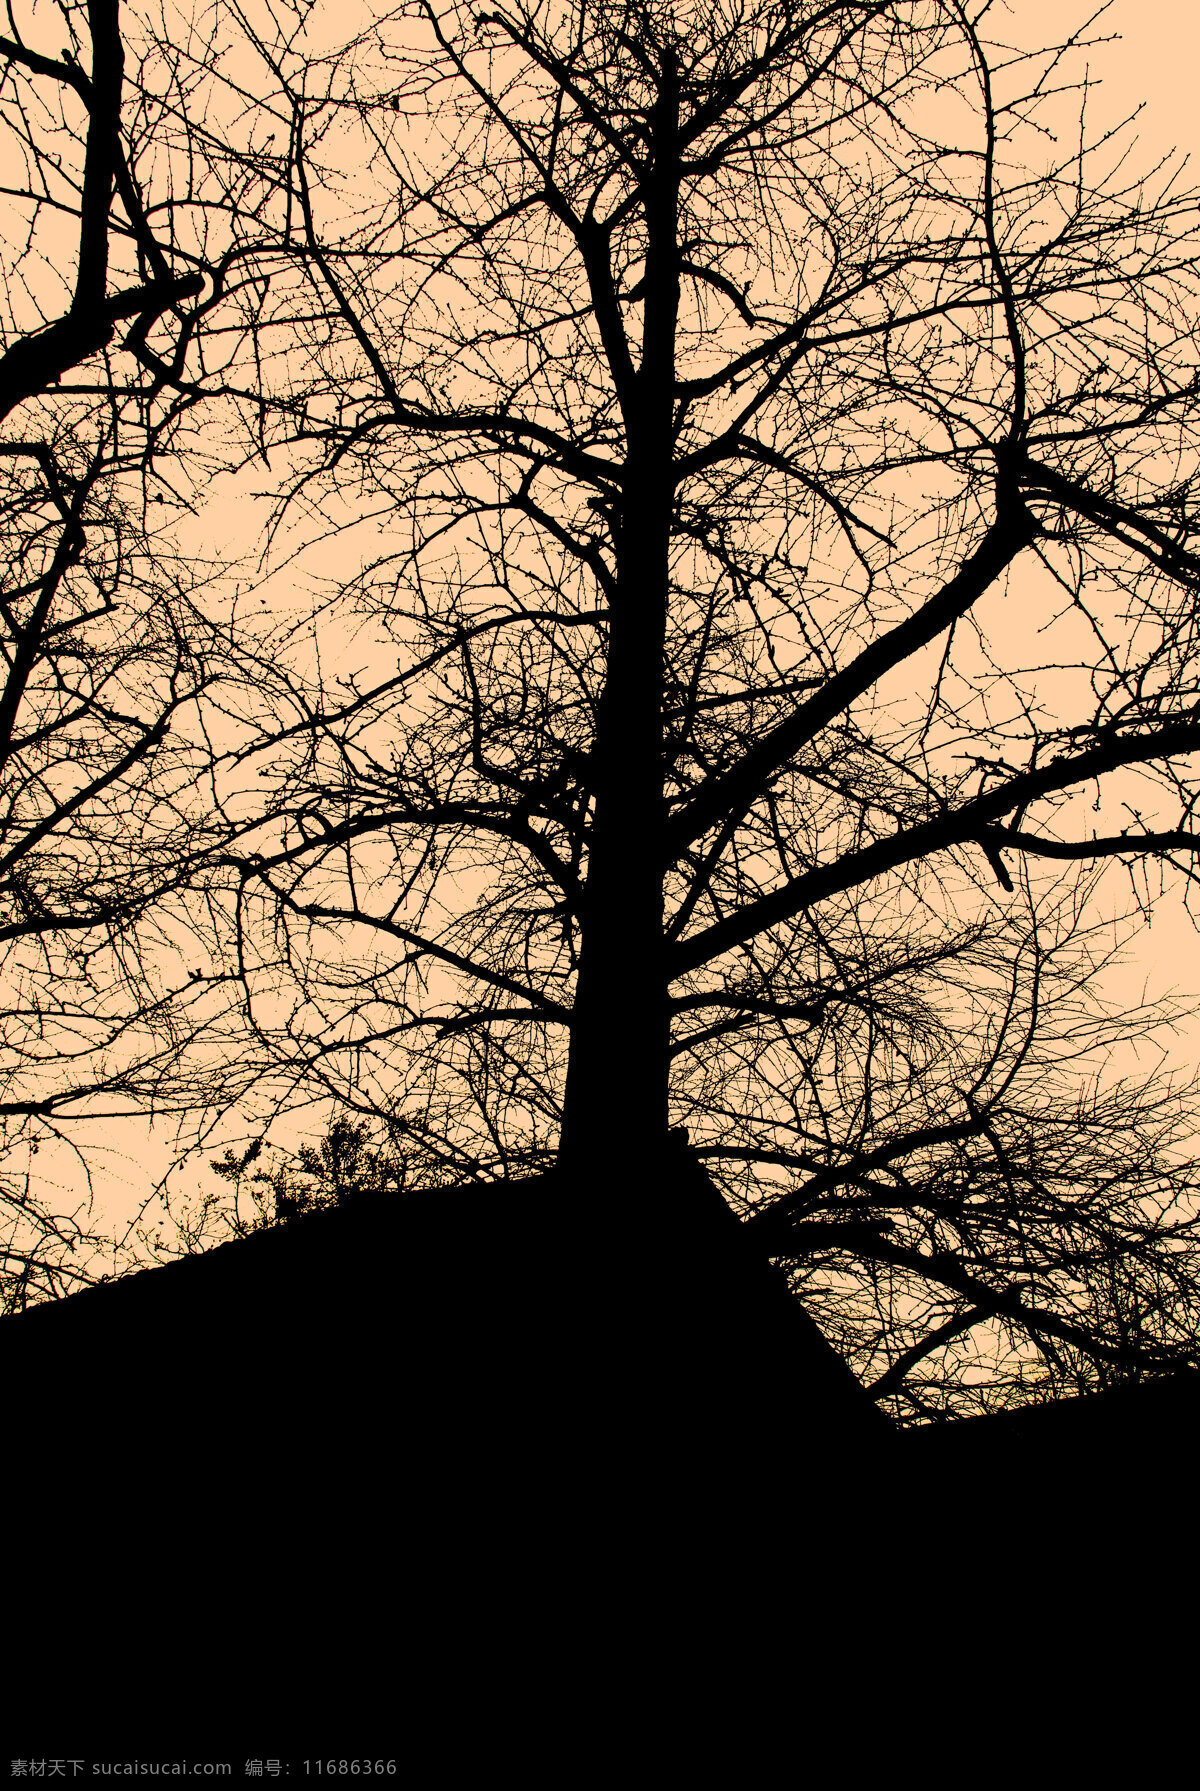 银杏 枯枝 剪影 枯树剪影 午后的夕阳 屋后的美丽 银杏枝干 枯木 旅游摄影 自然风景